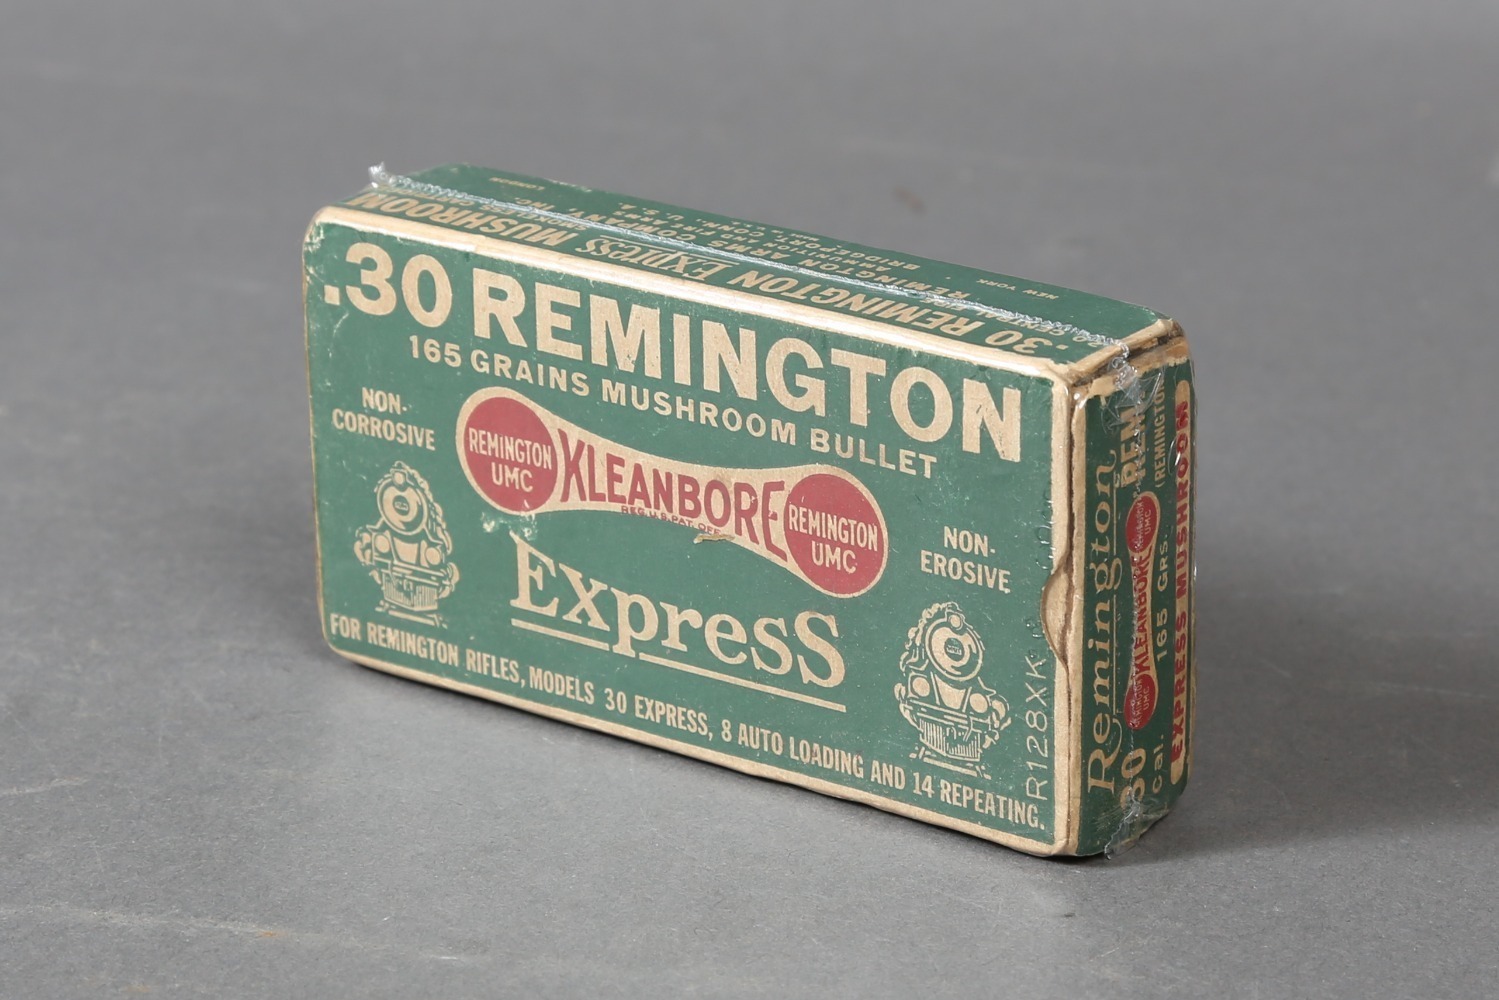 1 Bx Vintage Remington .30 Rem. Ammo